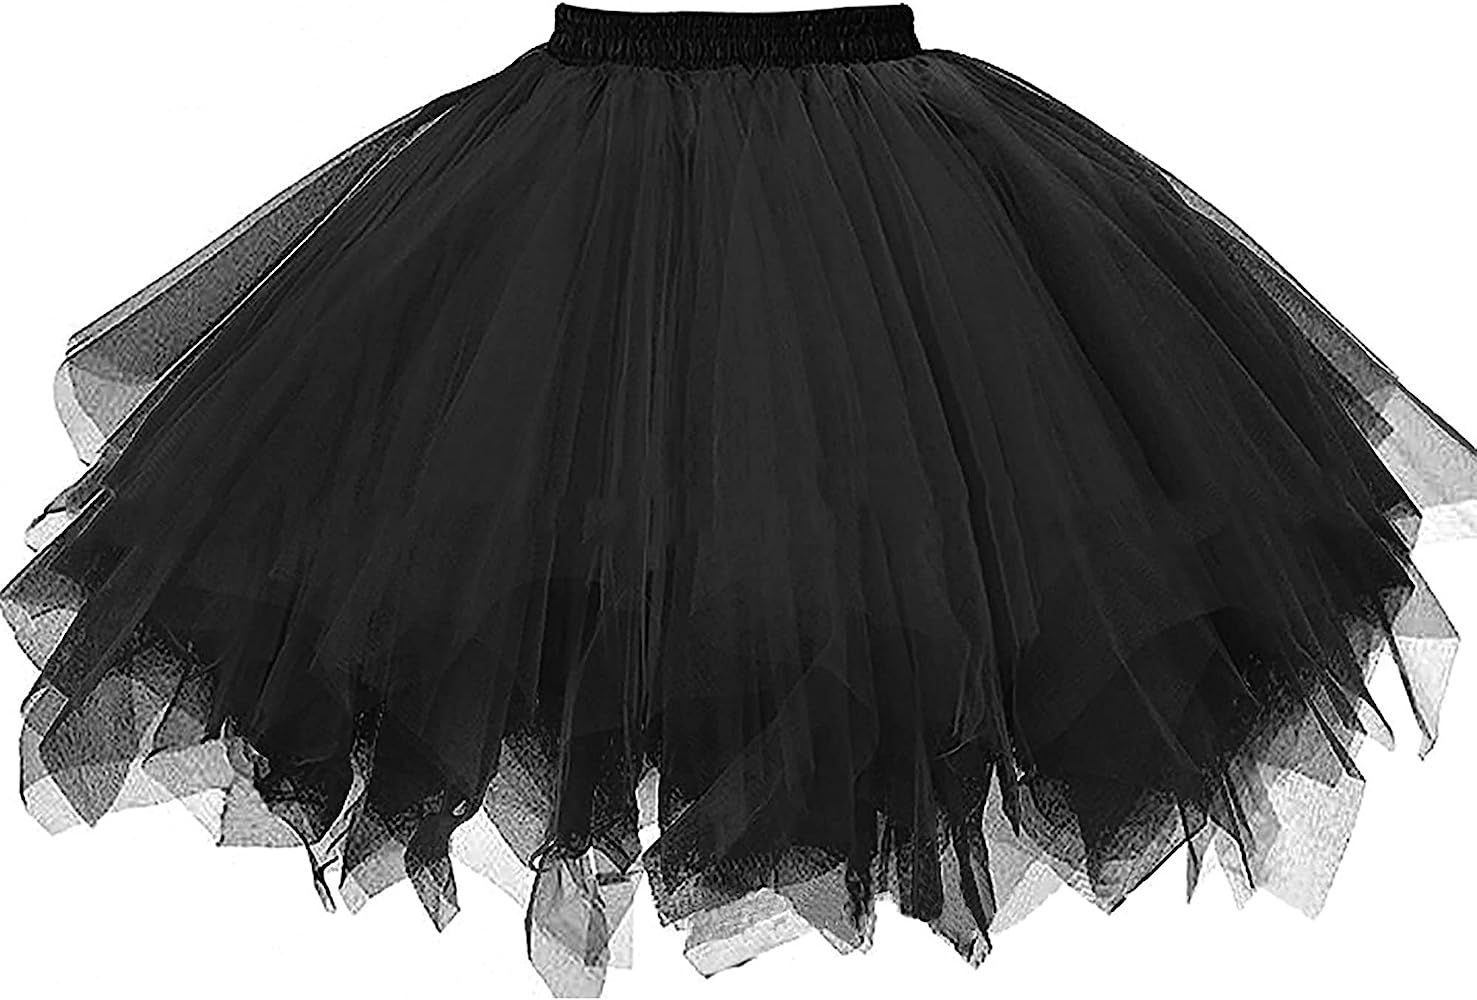 Ayliss Women's Tutu Skirt 1950s Short Vintage Petticoats Bubble Ballet Skirt Tutu Tulle Halloween Co | Amazon (US)